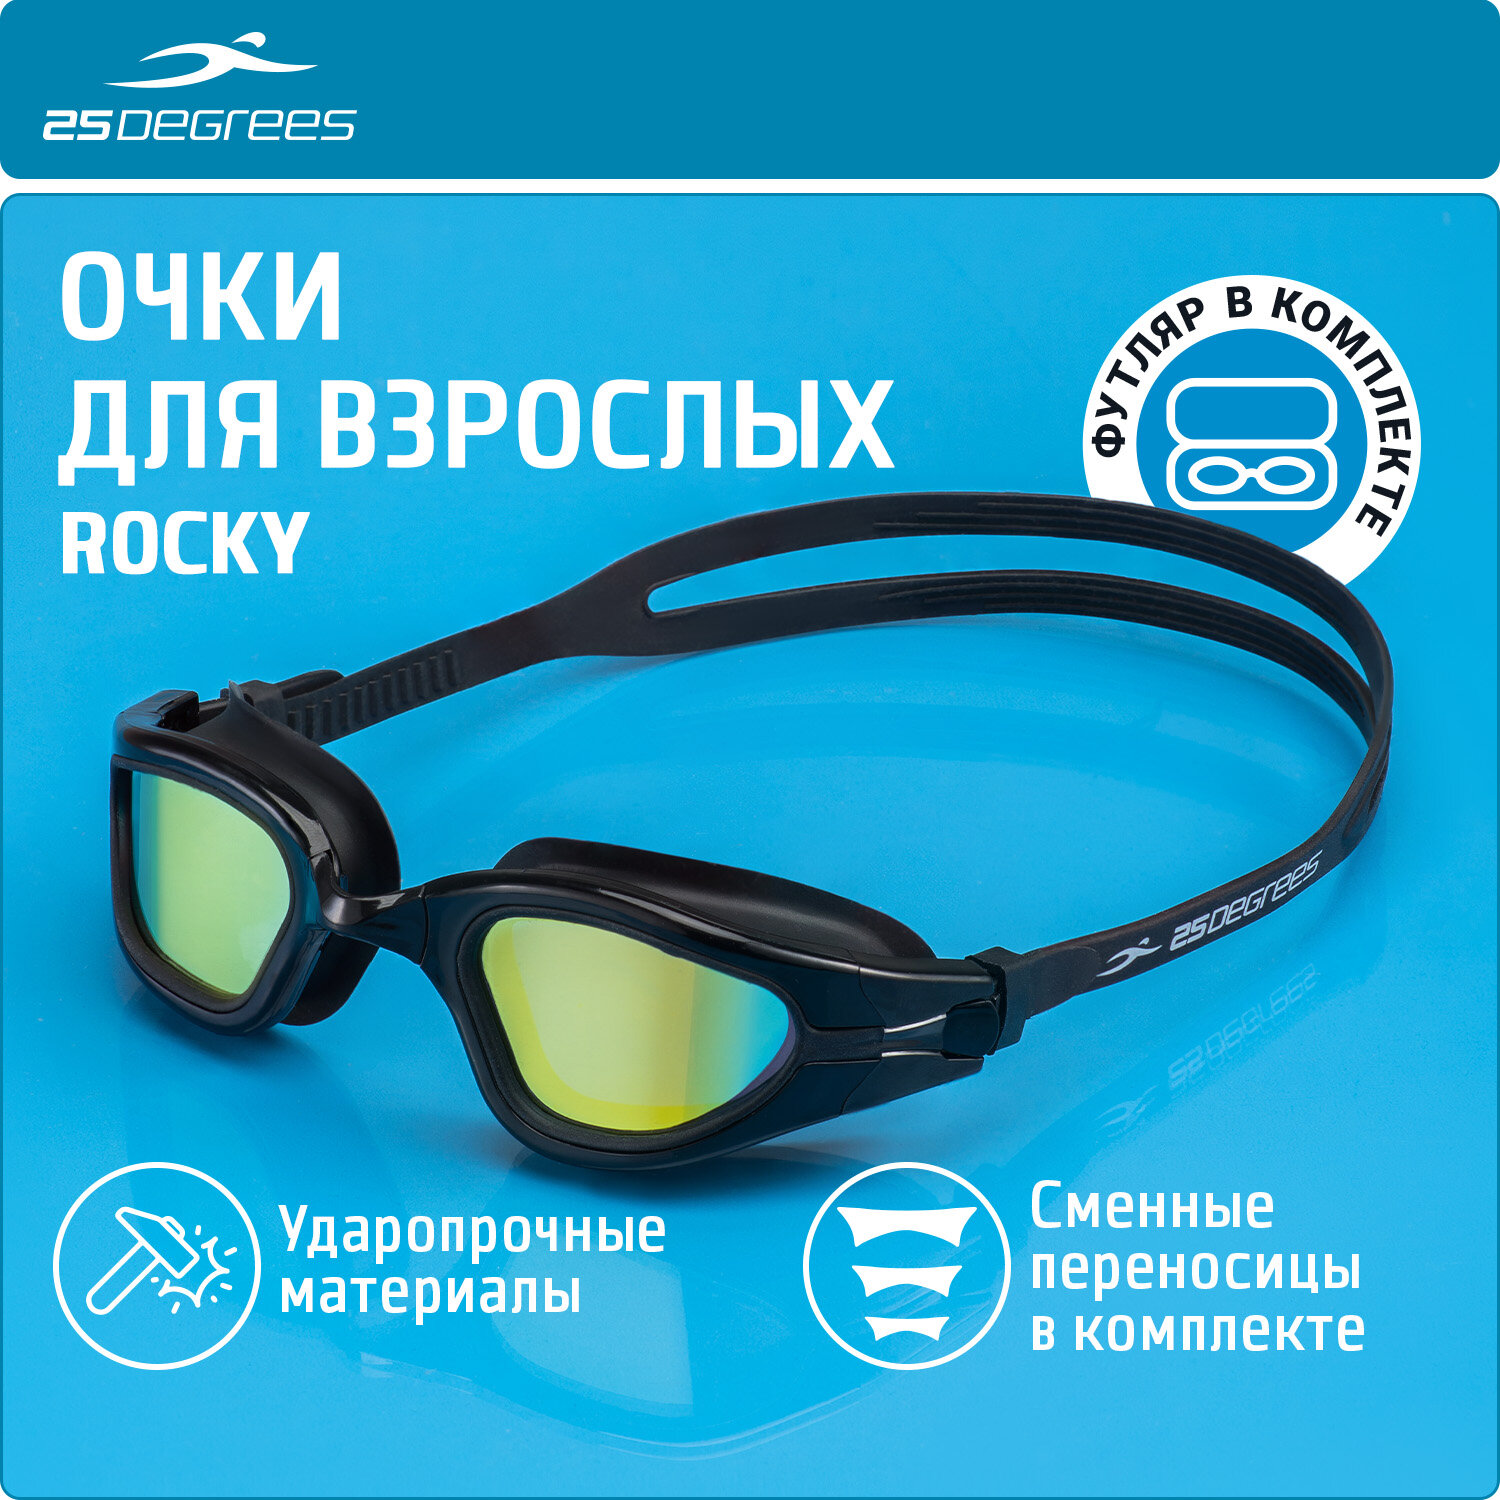 Очки для плавания 25DEGREES Rocky Black Mirror футляр в комплекте, съёмная переносица, зеркальные линзы, цвет черный